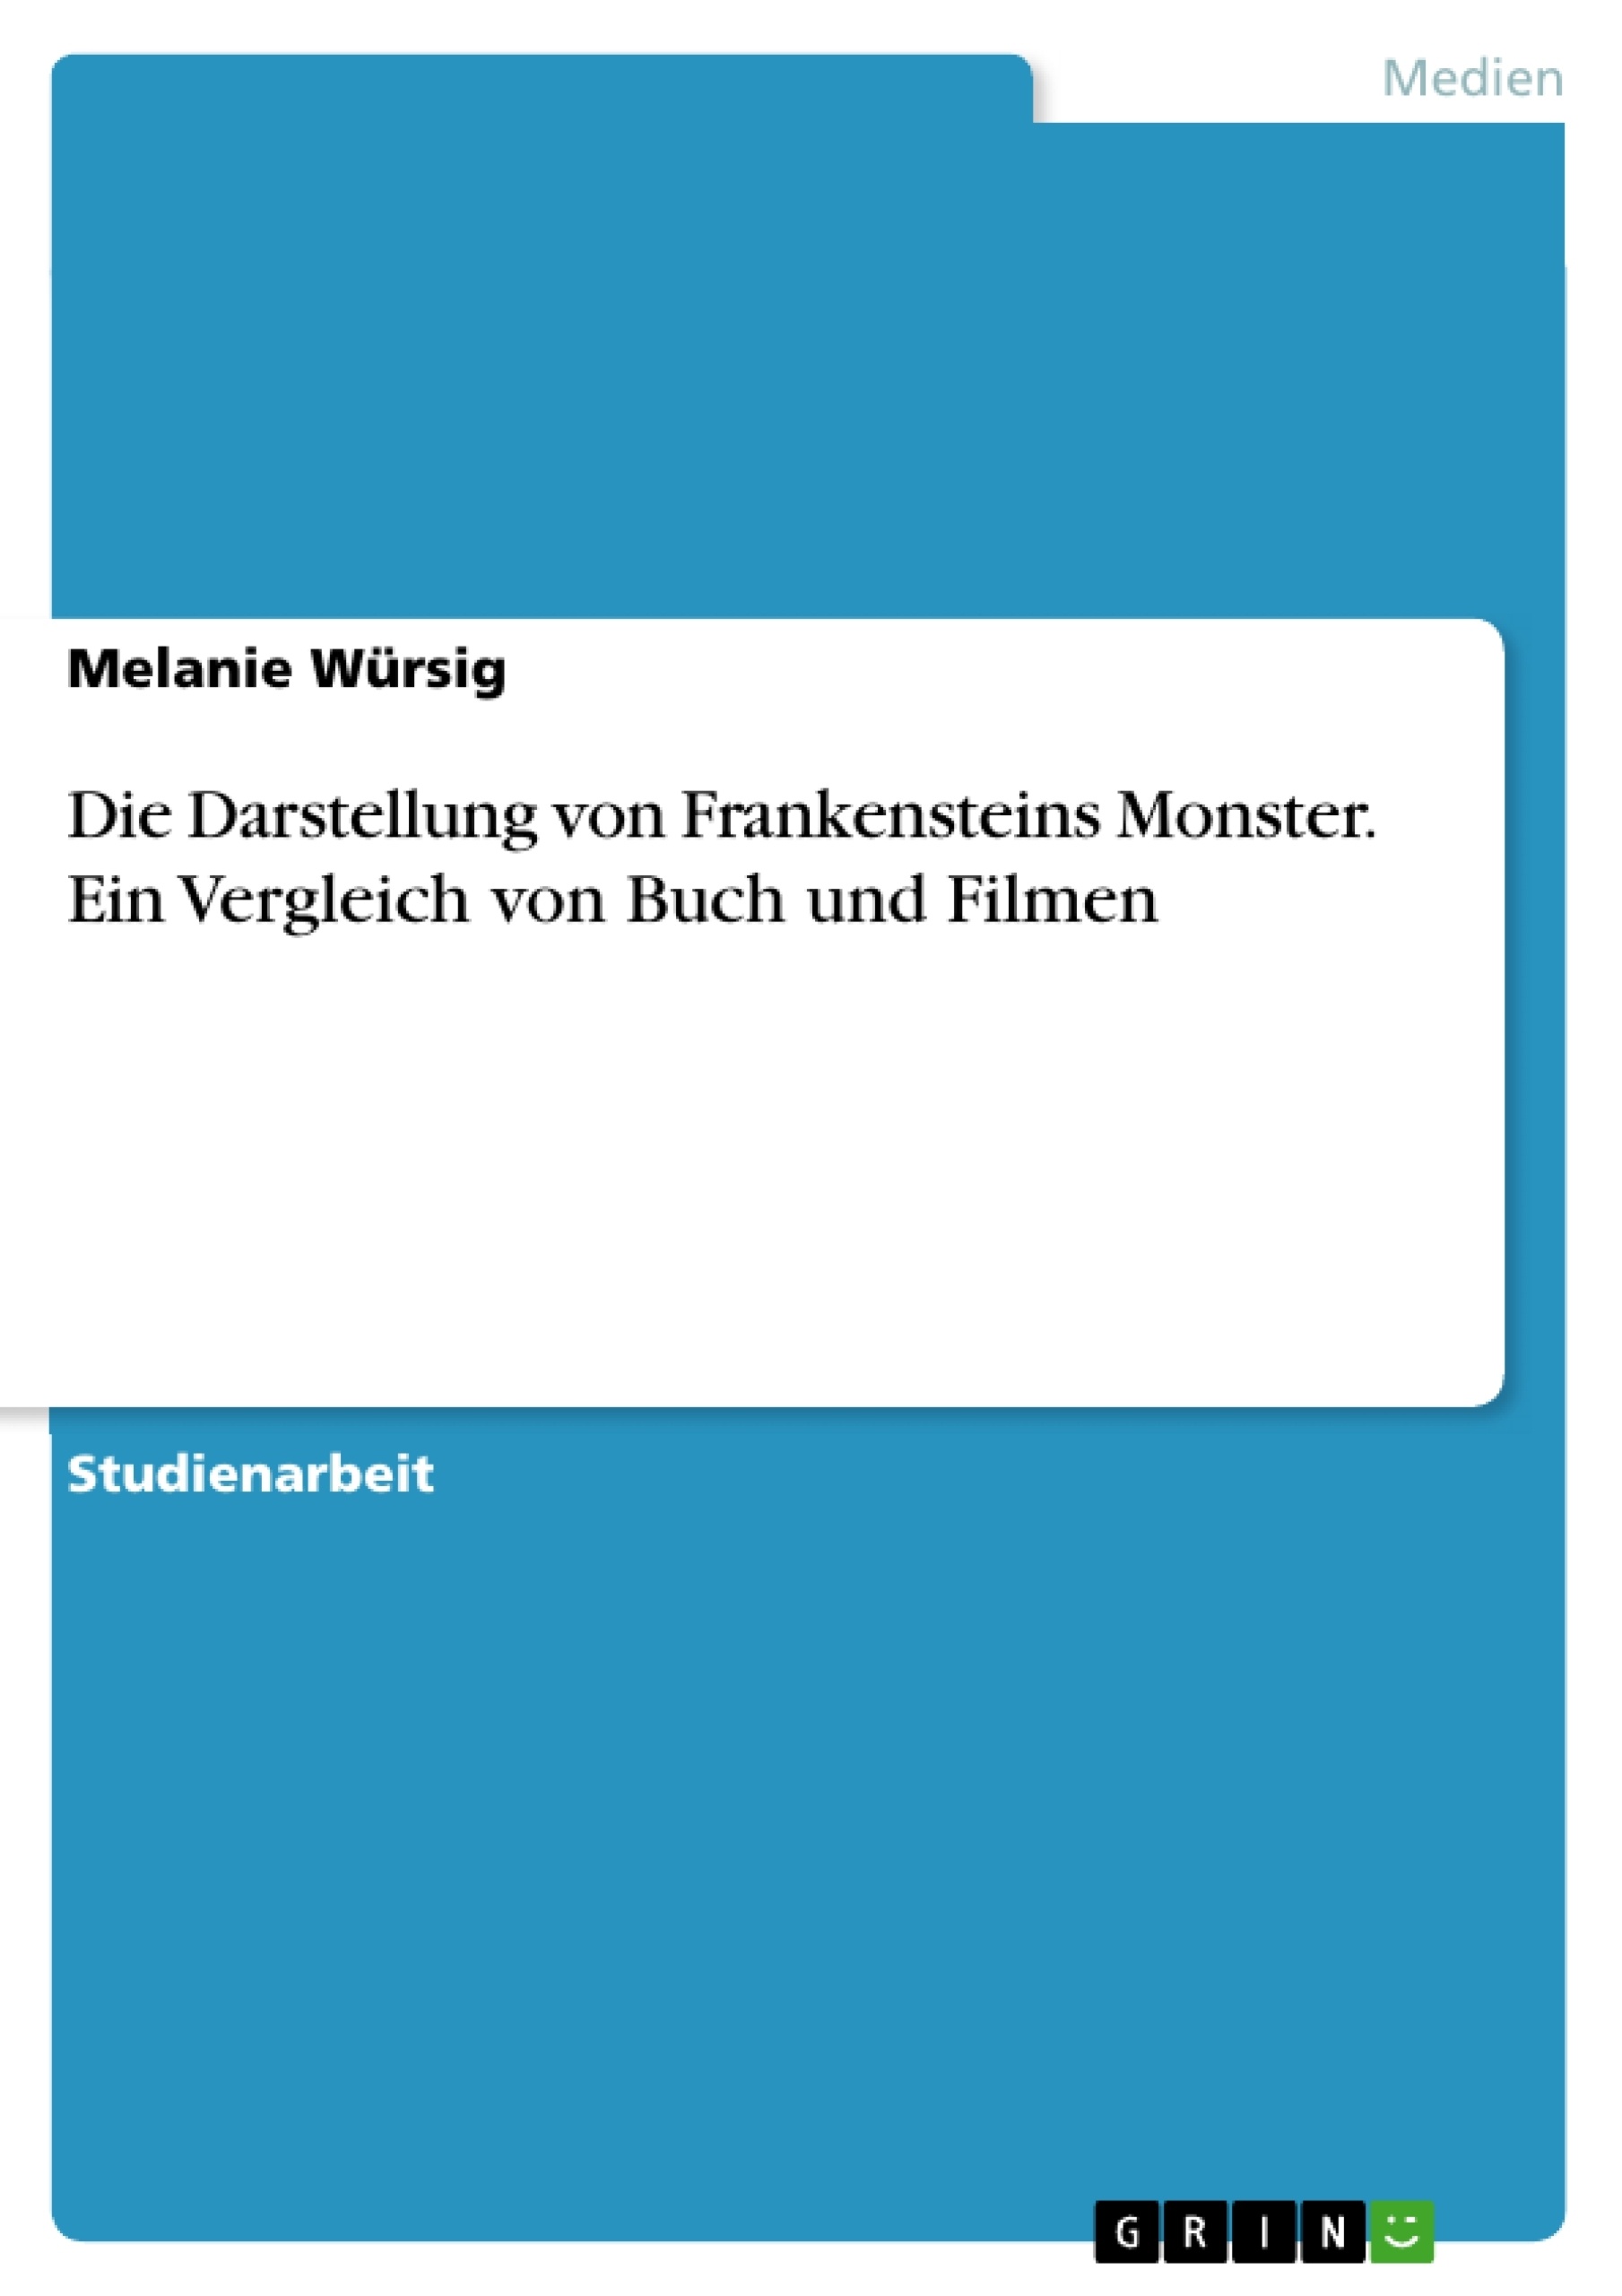 Título: Die Darstellung von Frankensteins Monster. Ein Vergleich von Buch und Filmen